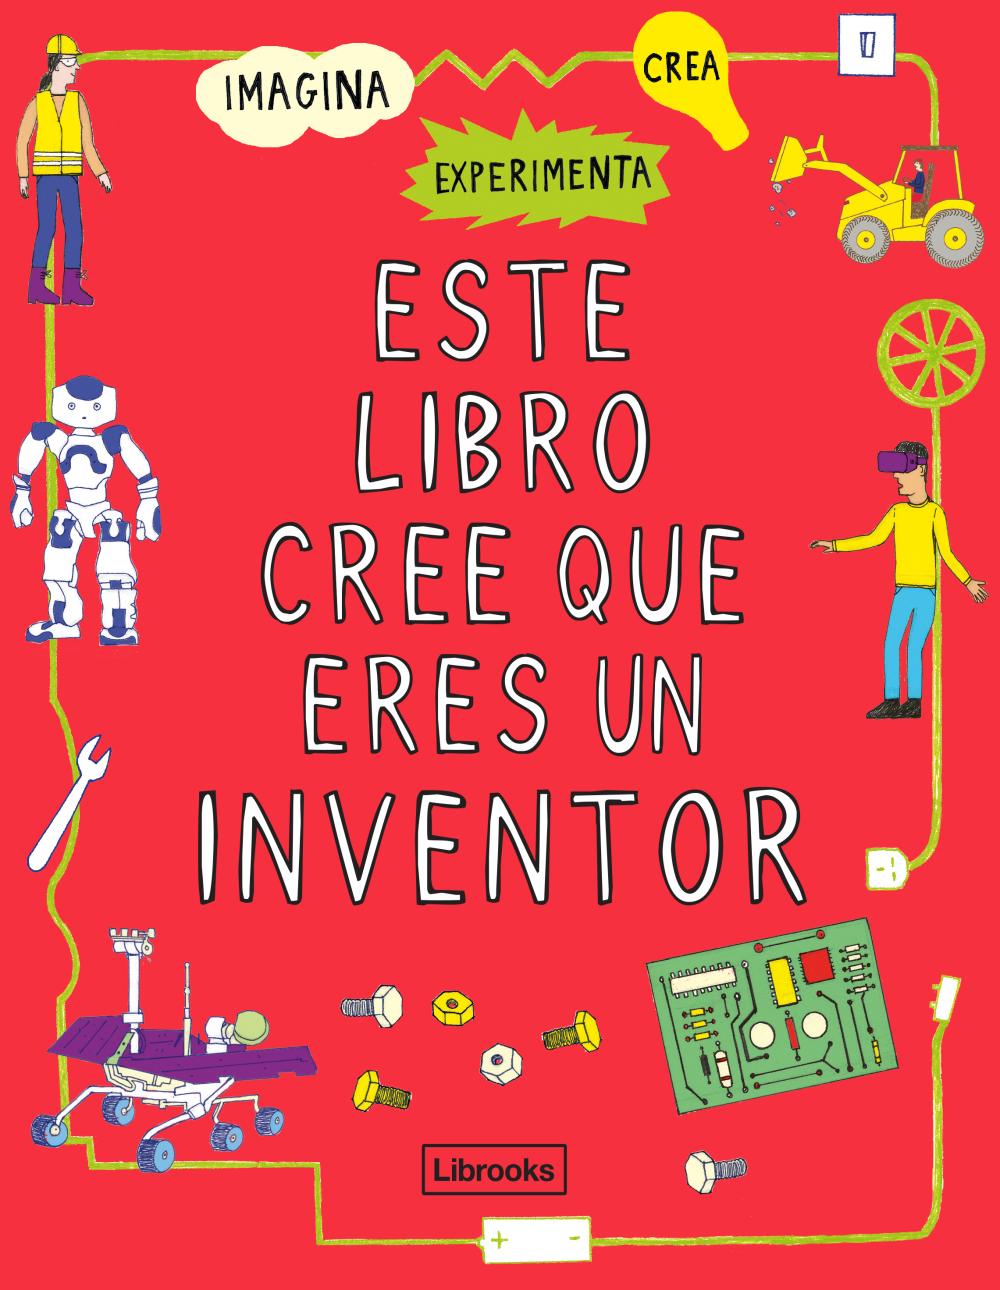 Este libro cree que eres un inventor